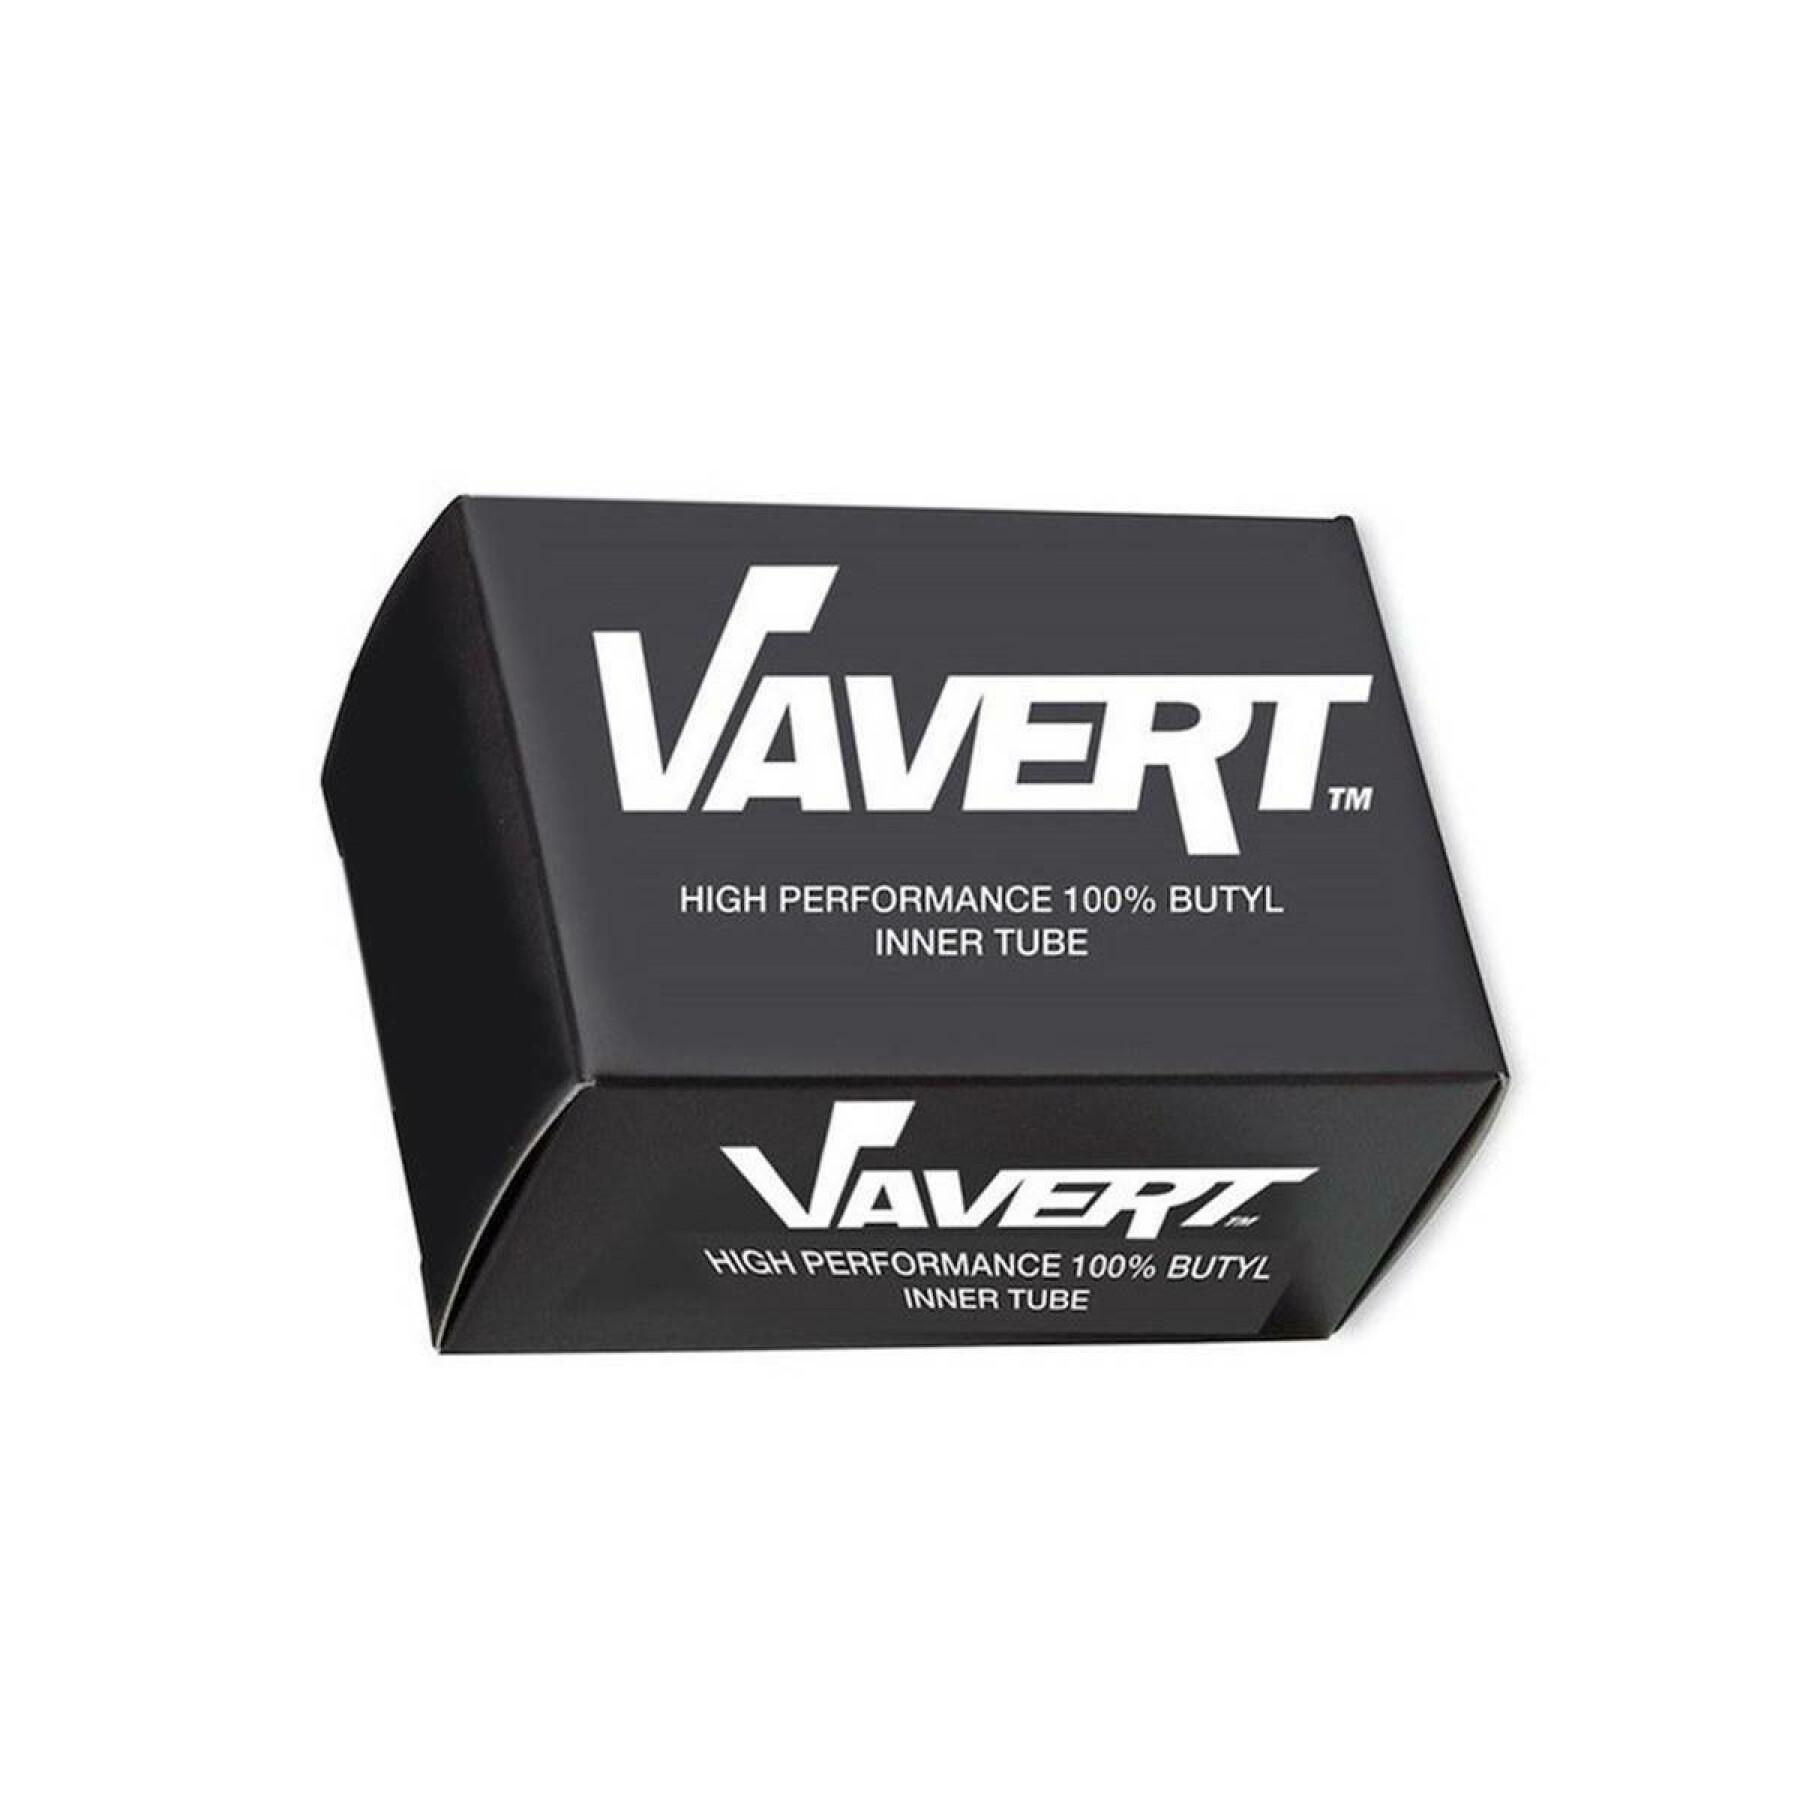 Valvola schrader della camera d'aria Vavert 26 40mm